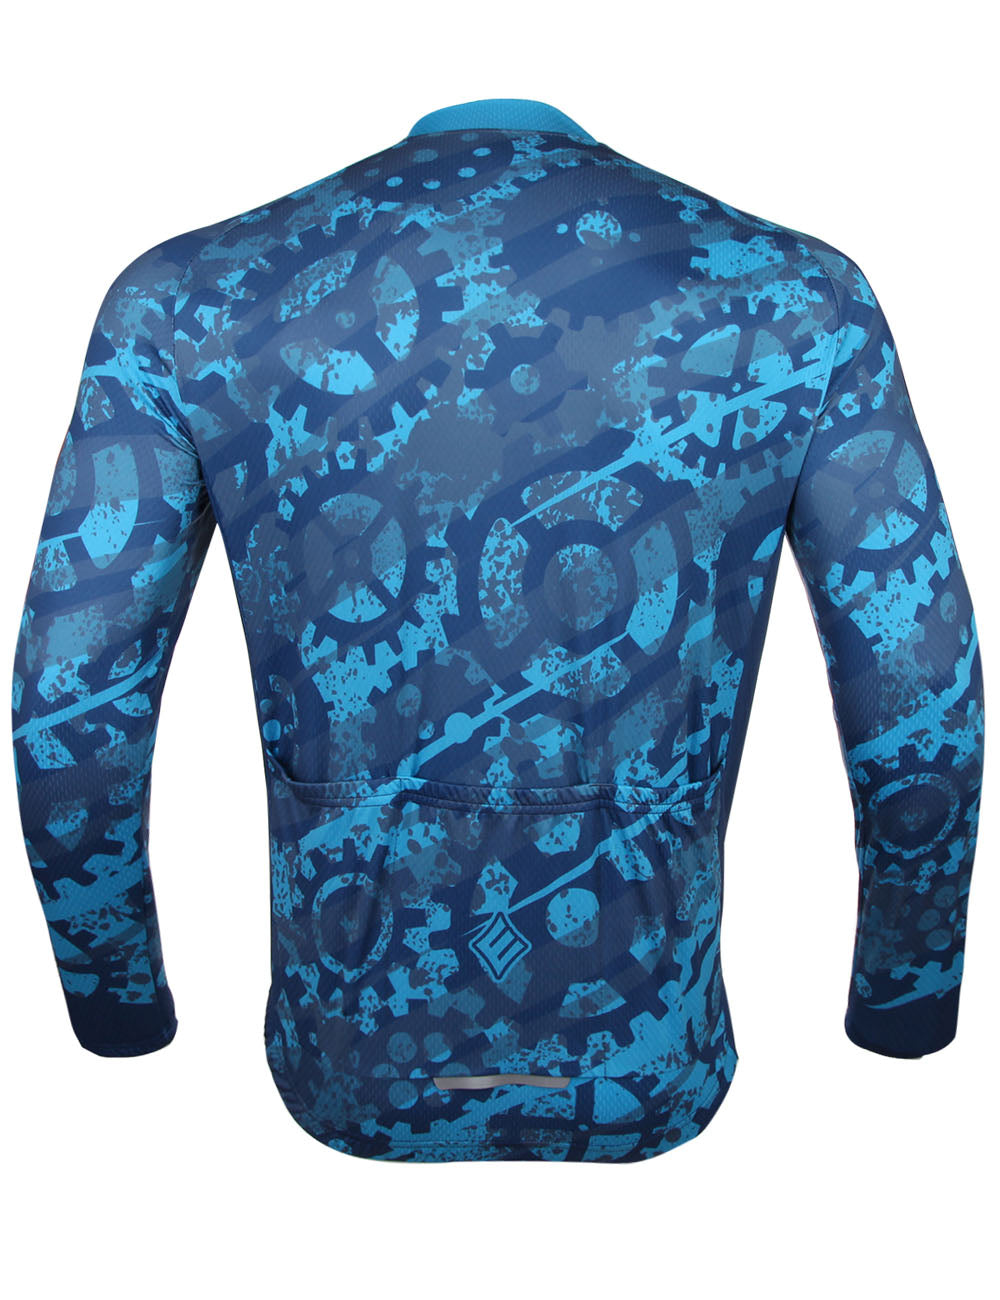 Neenca Long Sleeve Cycling Jersey Men's Mountain Bike Shirt Tops